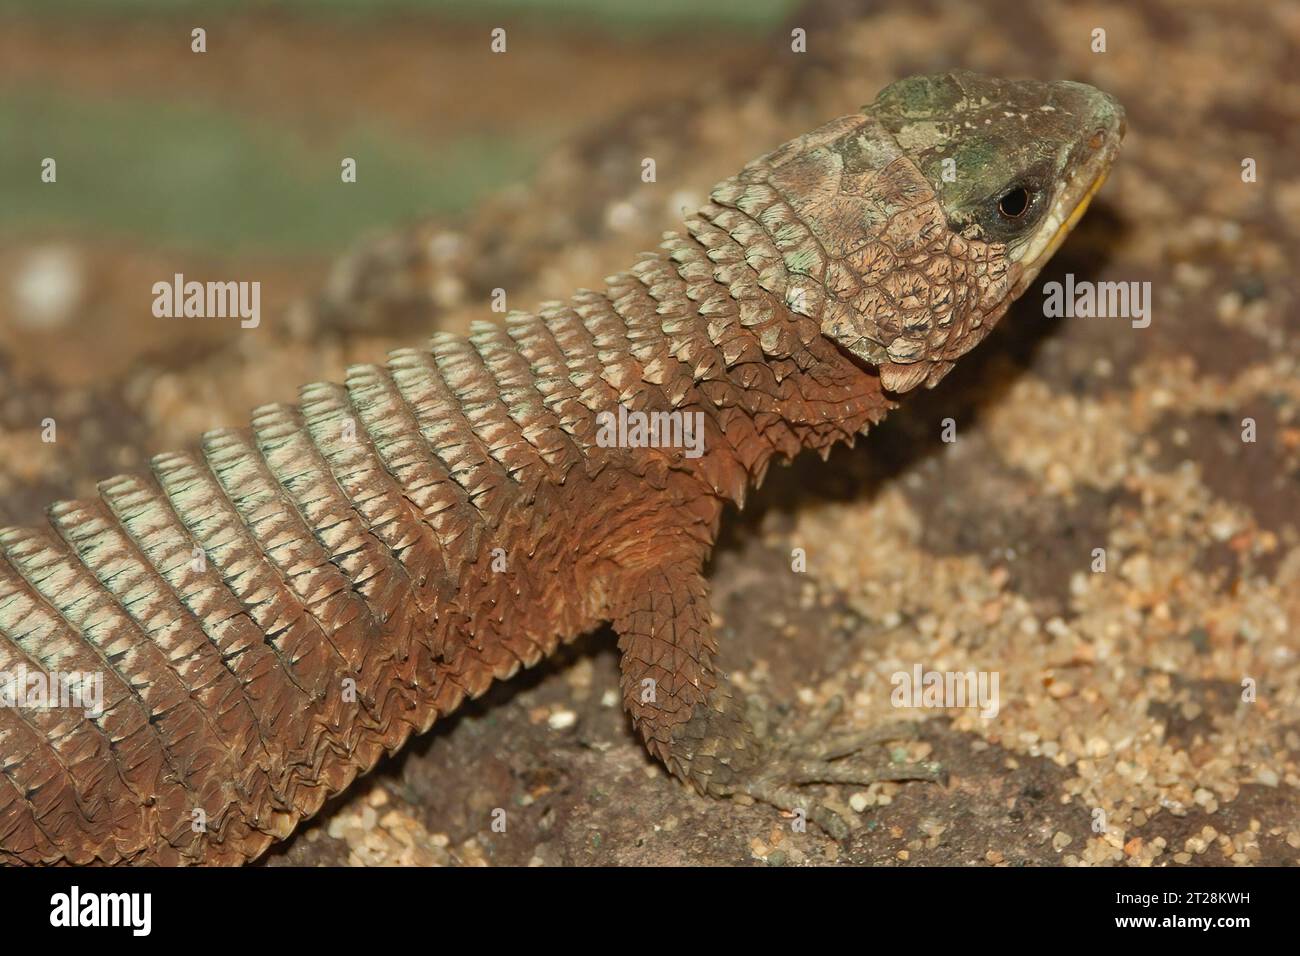 Closeup on a giant girdled lizard, Cordylus giganteus sitting on wood Stock Photo